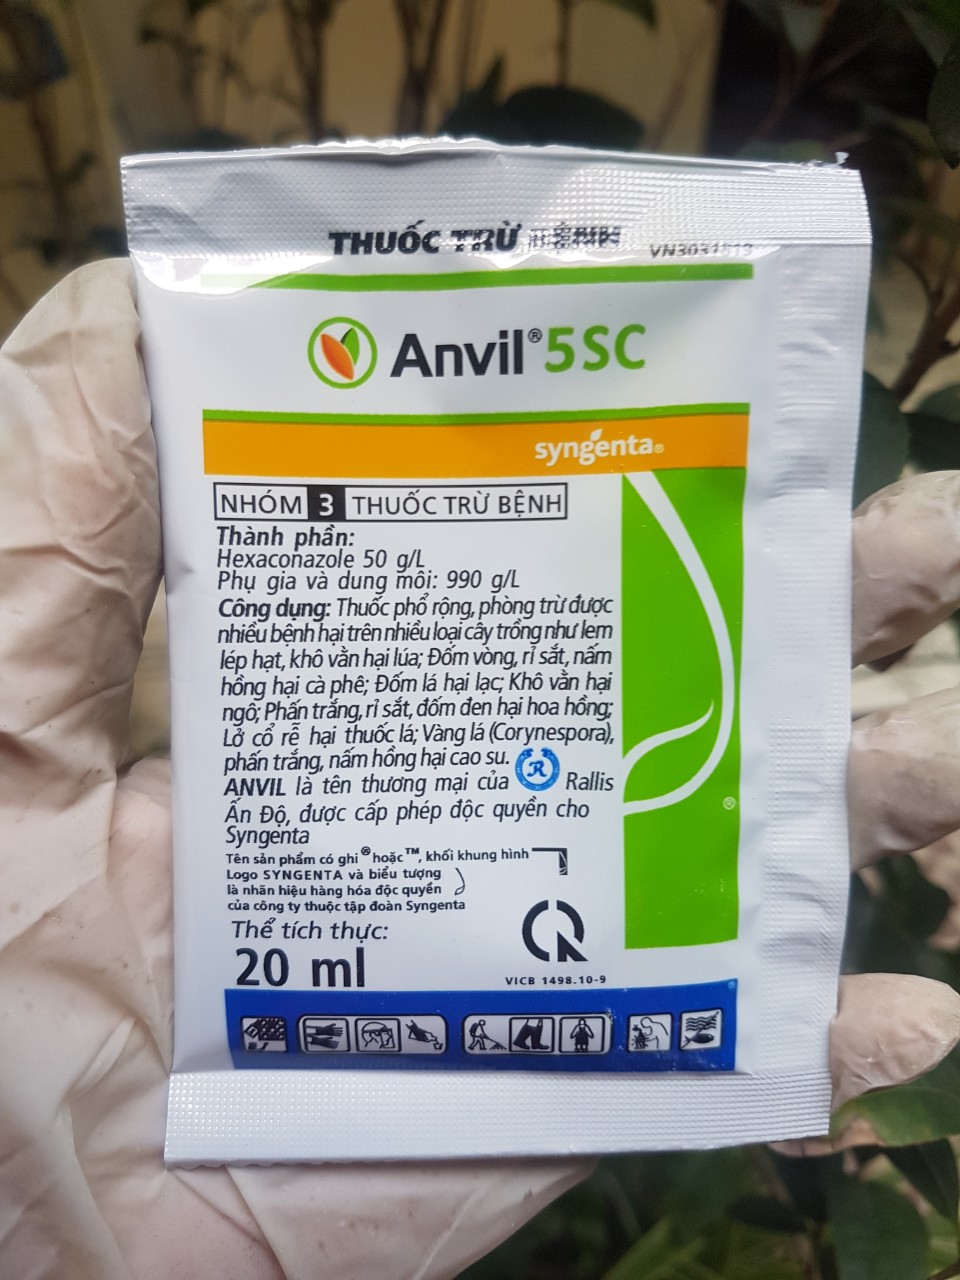 Diệt nấm bệnh cho phong lan cây trồng Anvil 5SC